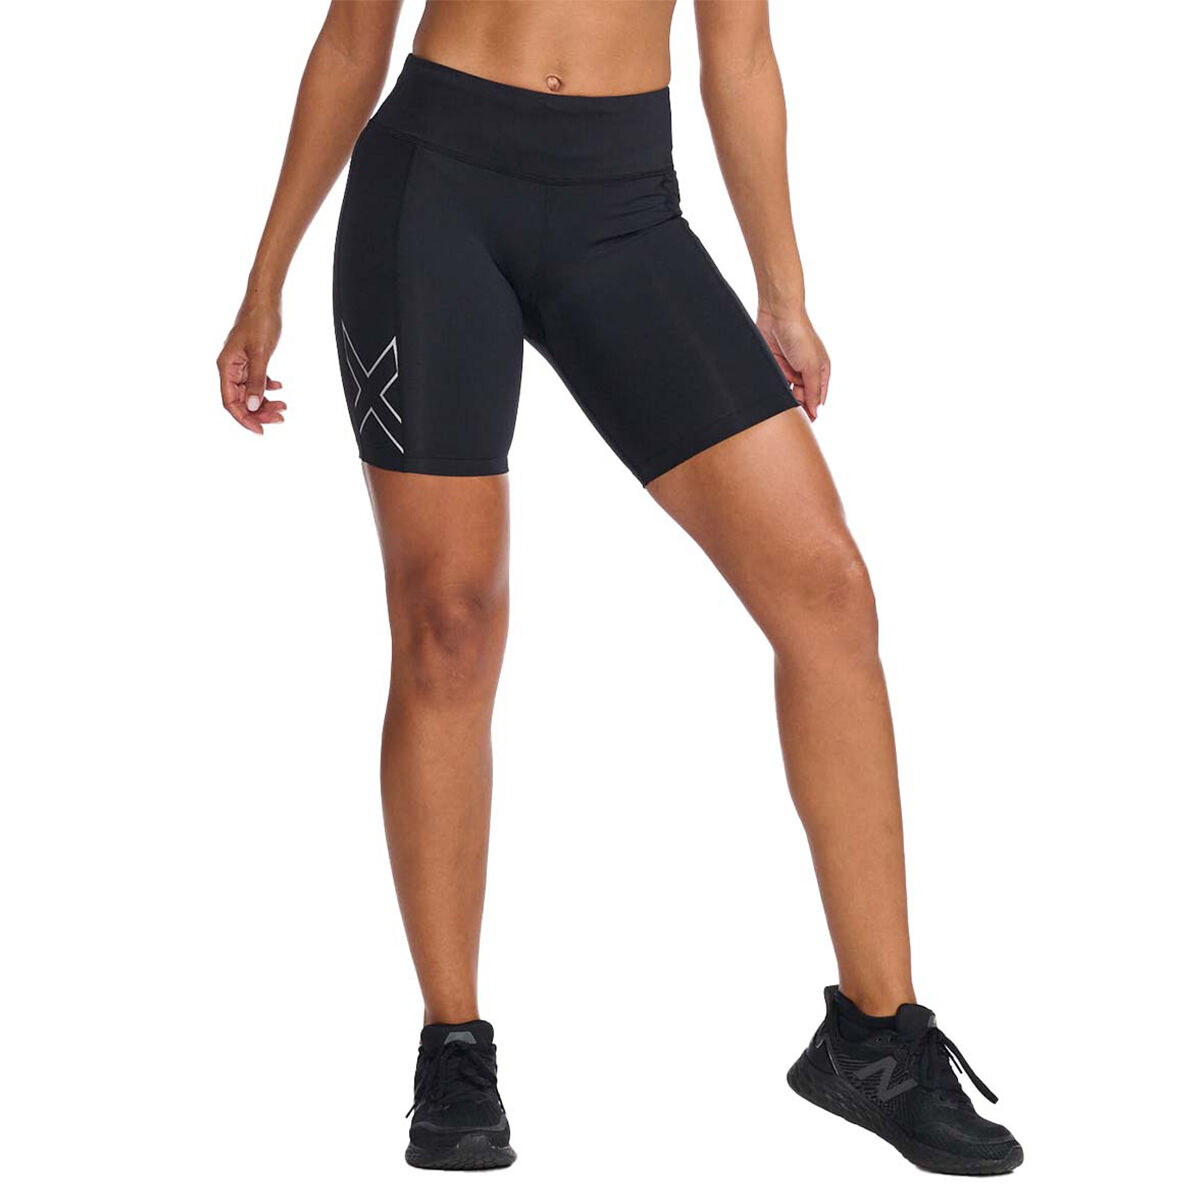 Reebok Womens Compression Running Shorts Workout Bike Short 9.5 Inch Inseam